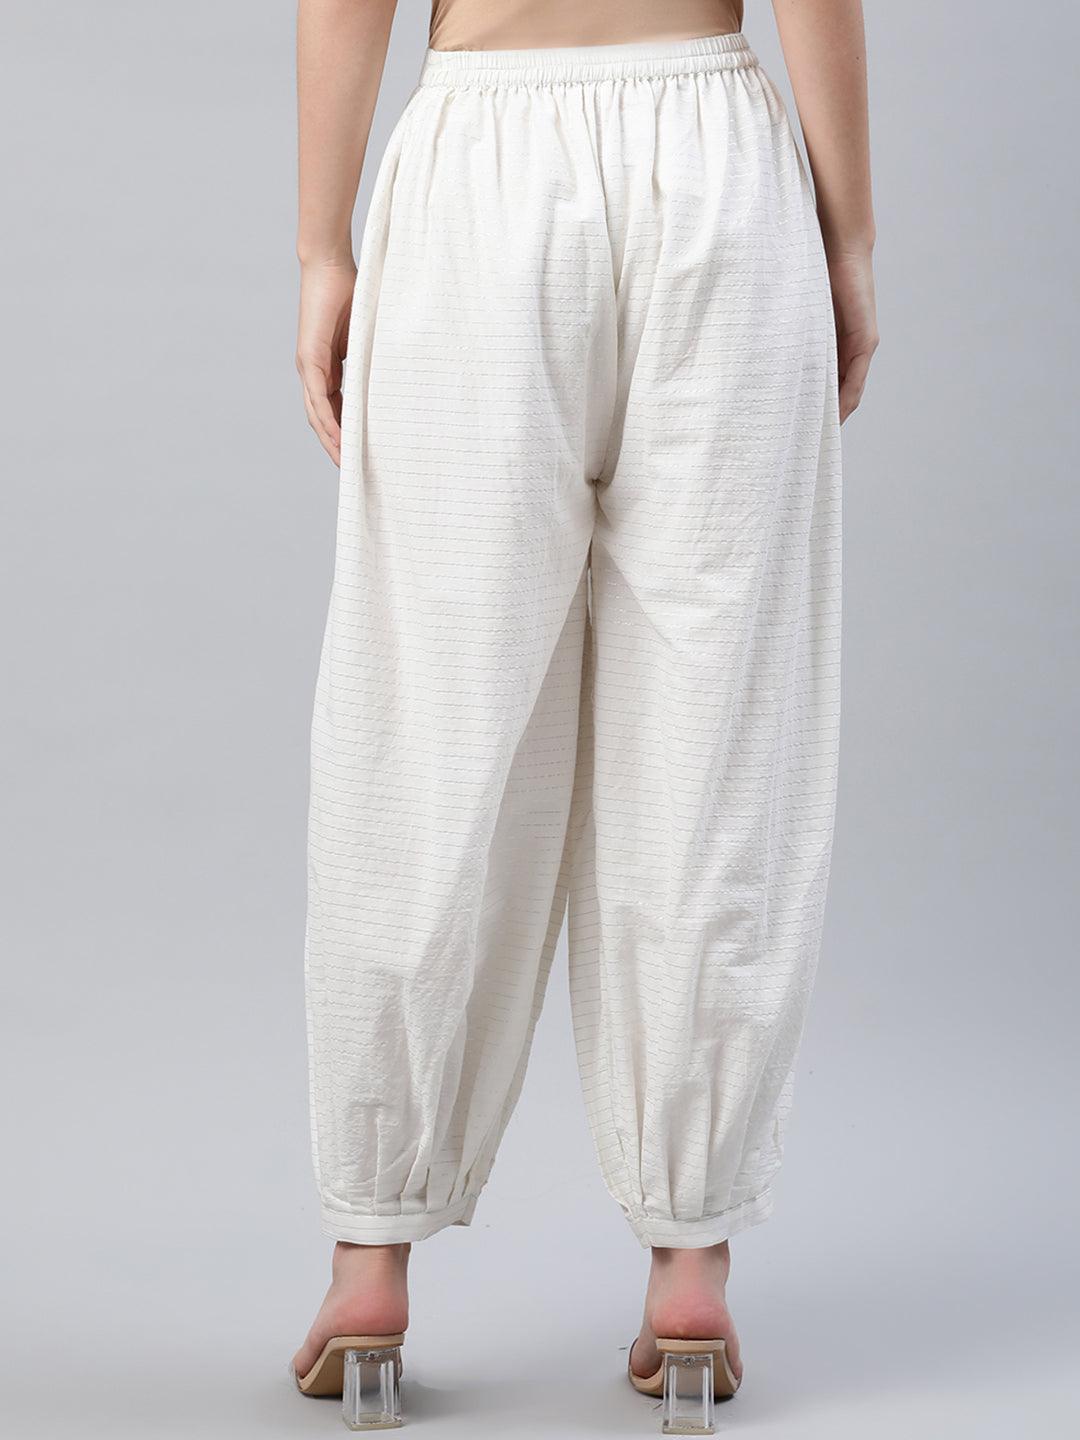 White Striped Cotton Salwar Pants